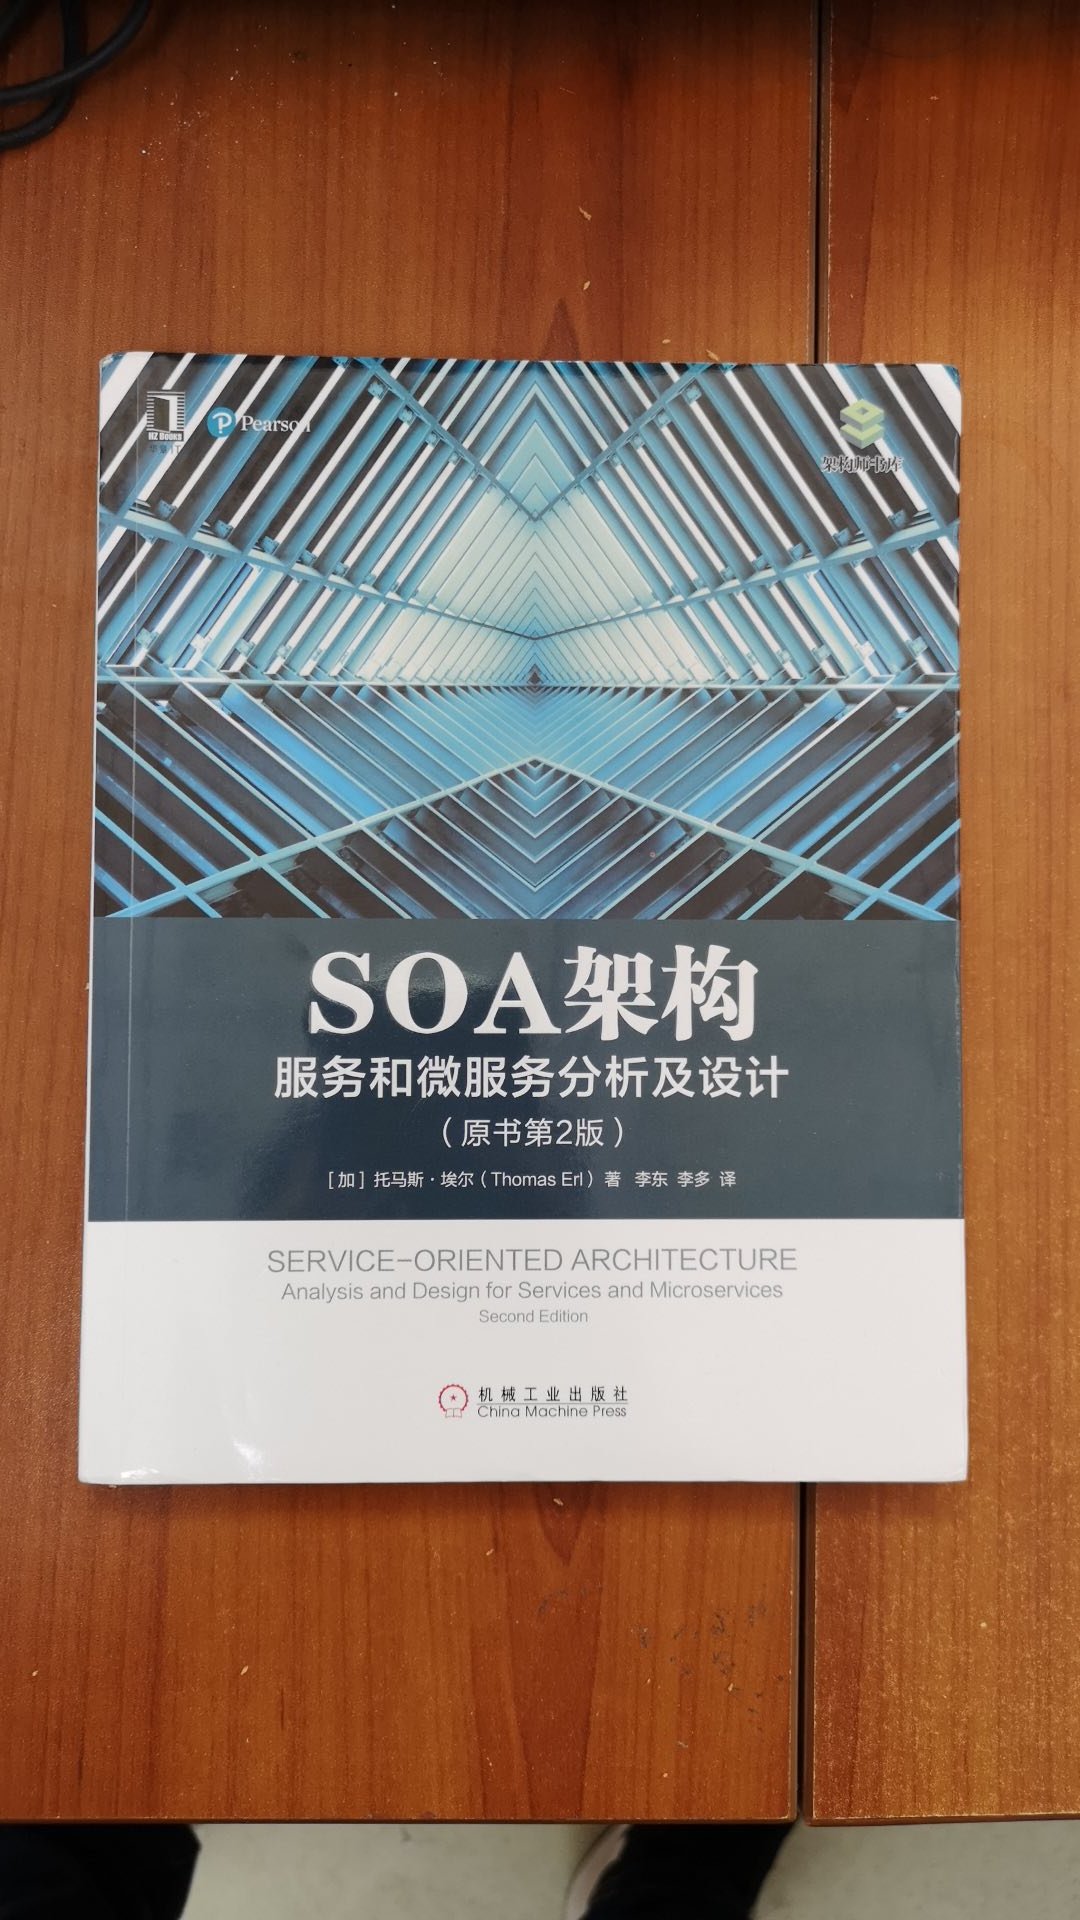 书讲的还是挺细的，对于想了解SOA架构的技术人员来说有帮助。